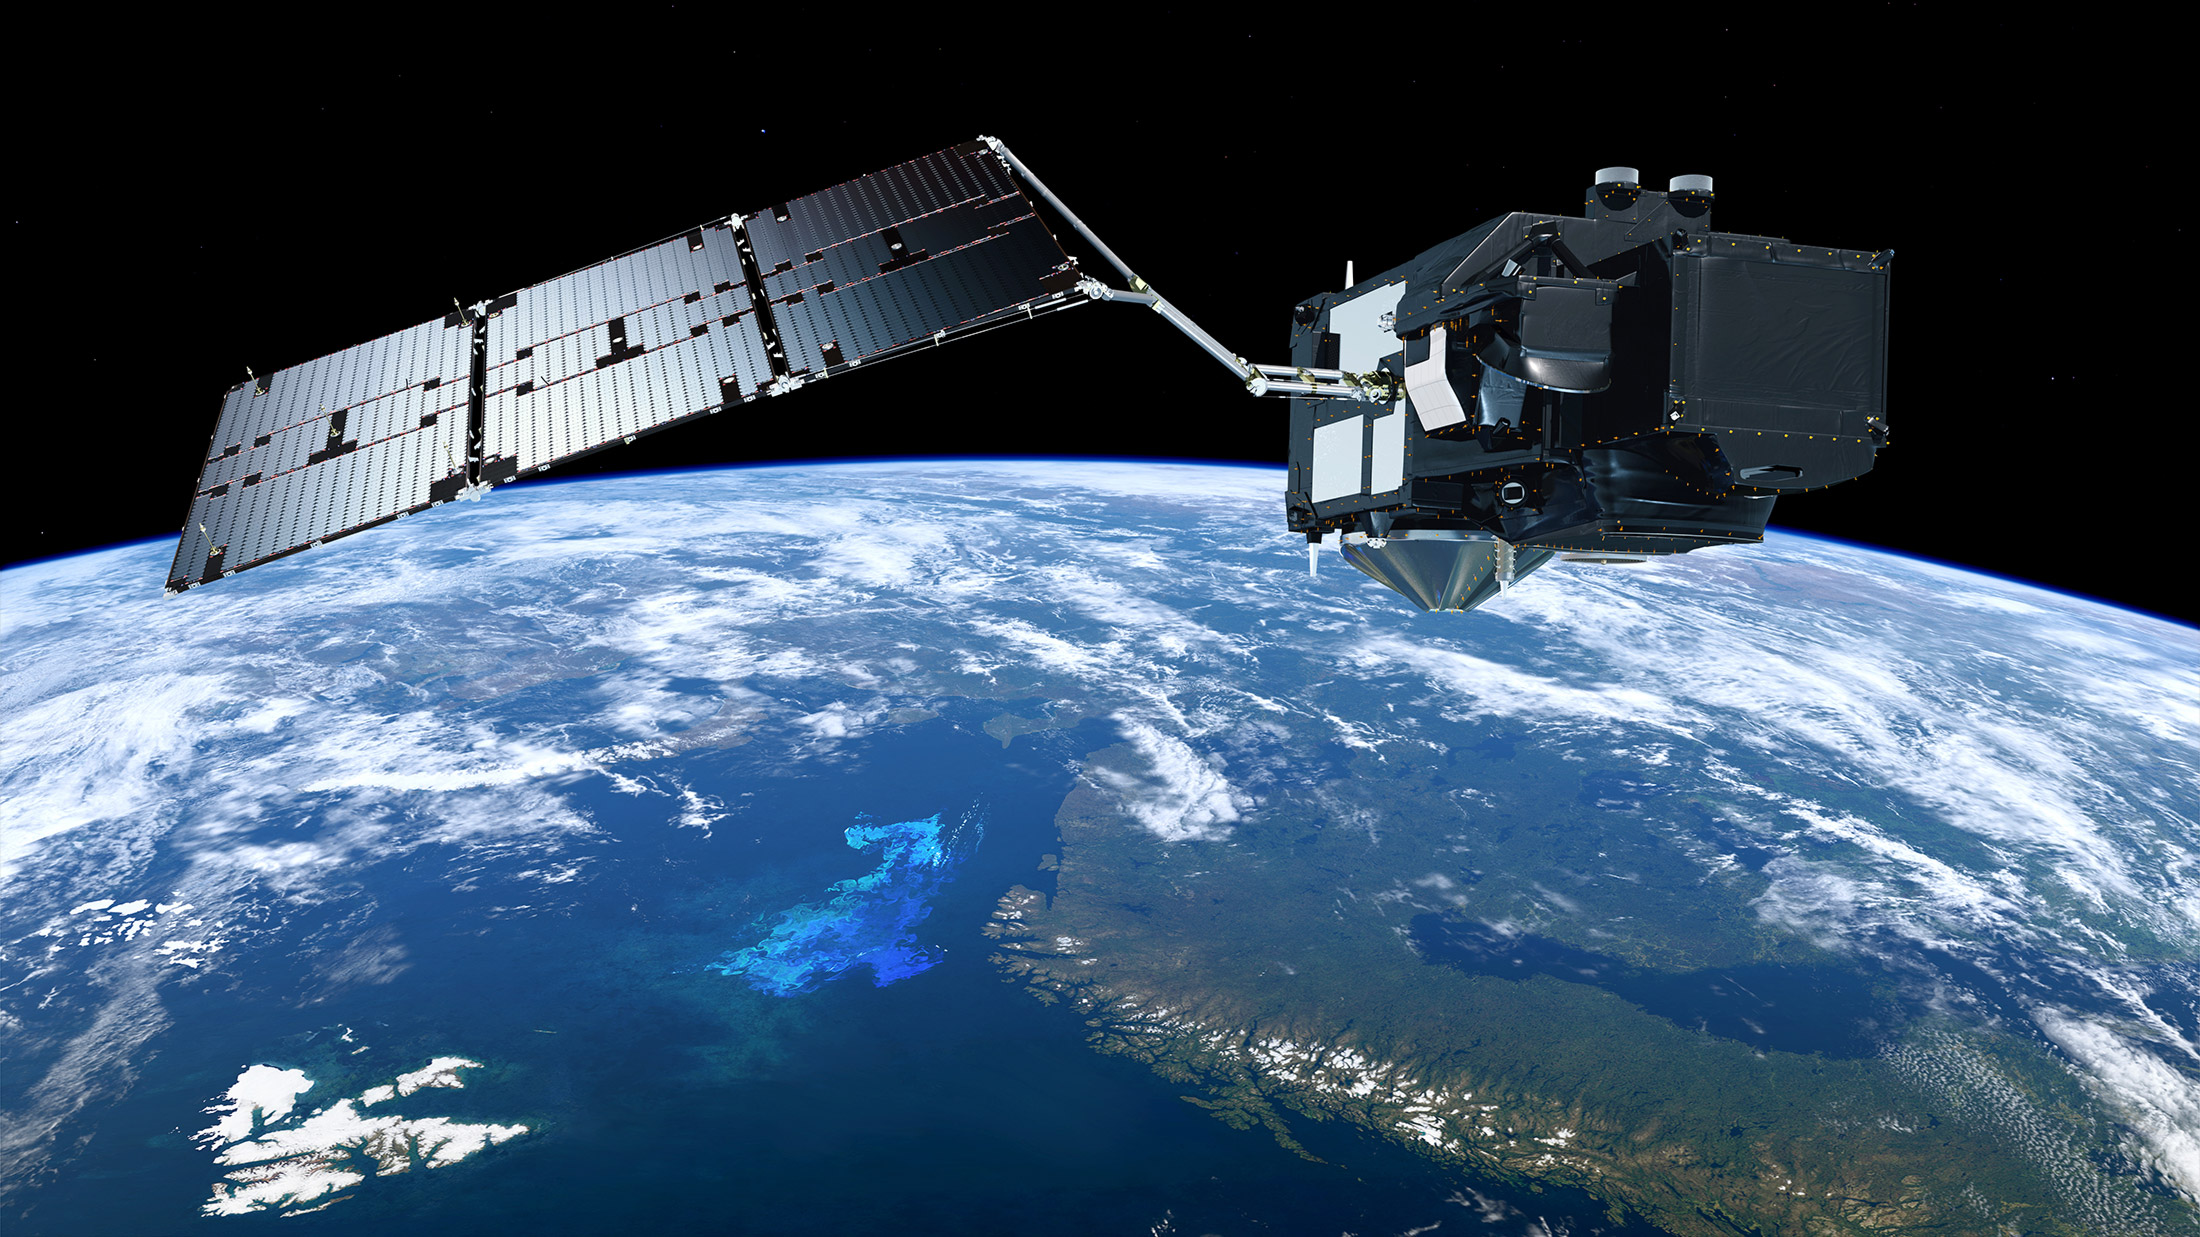 Les satellites Sentinel du programme Copernicus produisent des images accessibles à tous. Très rares sont celles du conflit partagées par l'industrie spatiale satellite ou encore les forces armées. © Copernicus, ESA, ATGmedialab